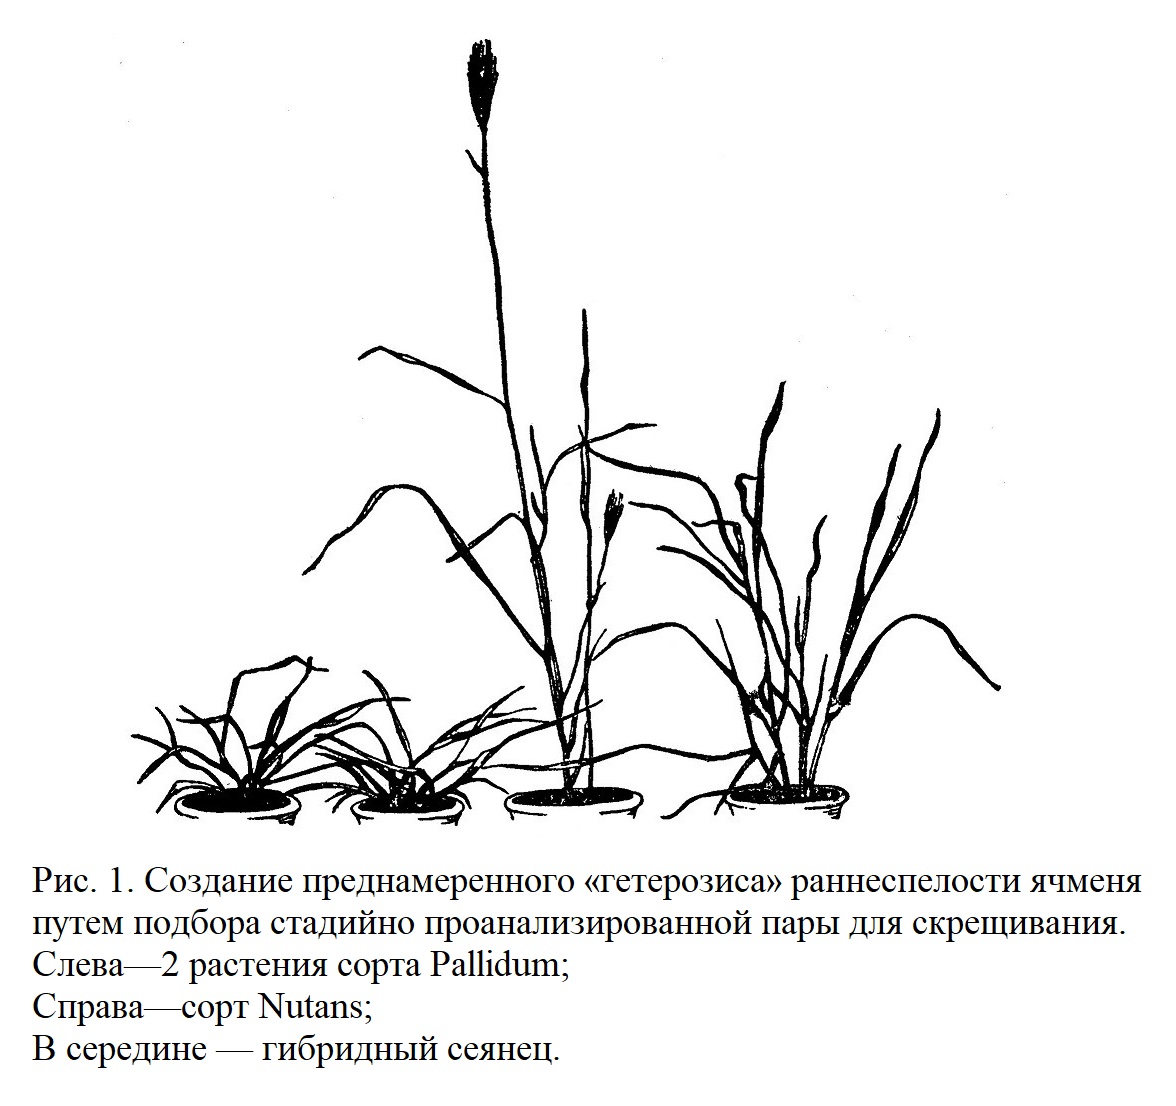 Подбор родительских пар у однолетних растений на основе стадийного анализа по Лысенко